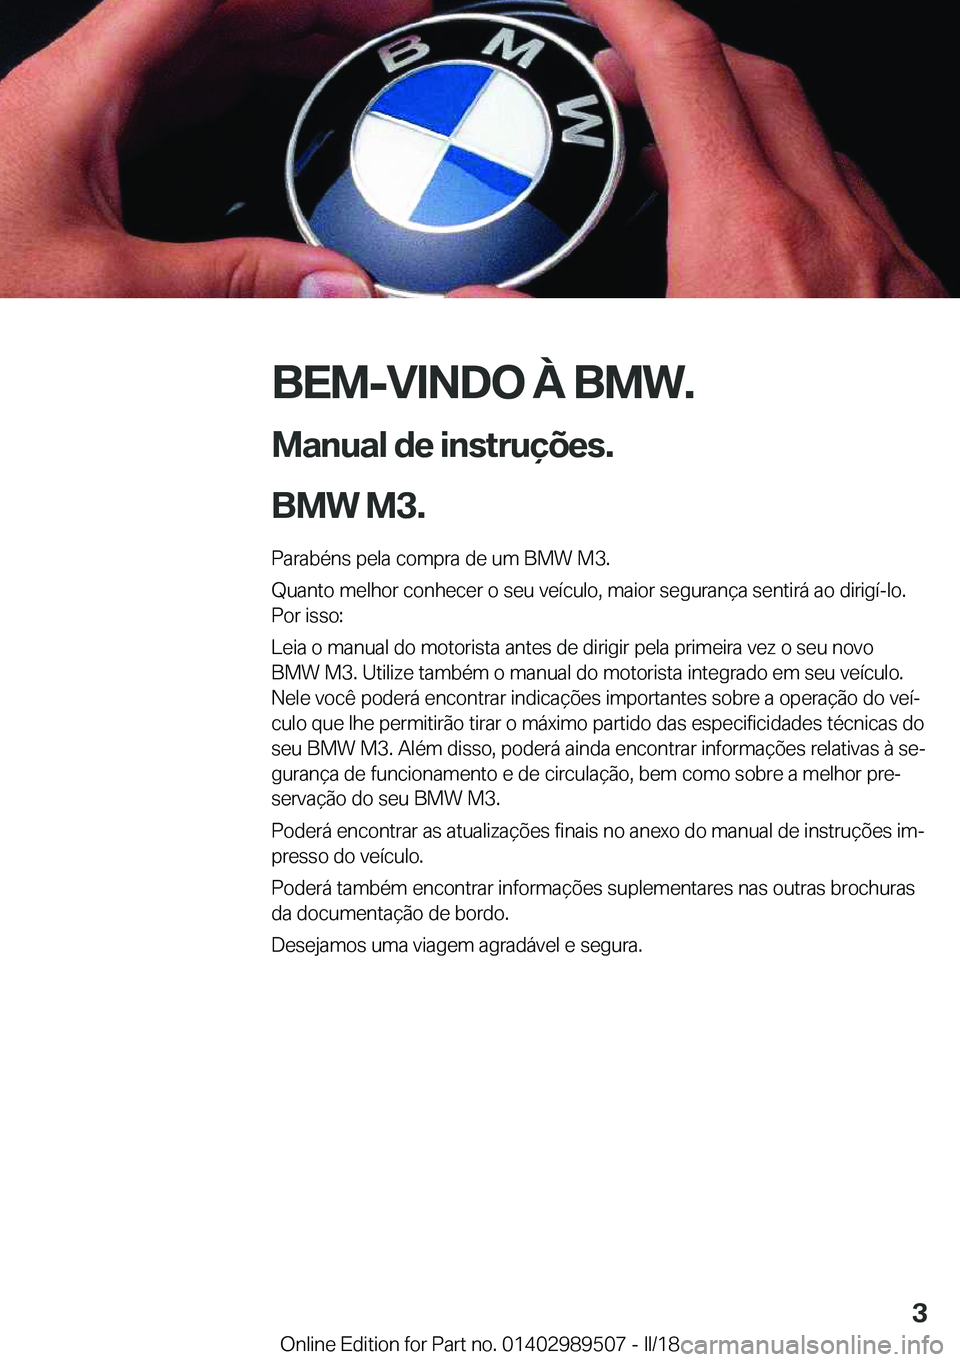 BMW M3 2018  Manual do condutor (in Portuguese) �B�E�M�-�V�I�N�D�O��À��B�M�W�.
�M�a�n�u�a�l��d�e��i�n�s�t�r�u�